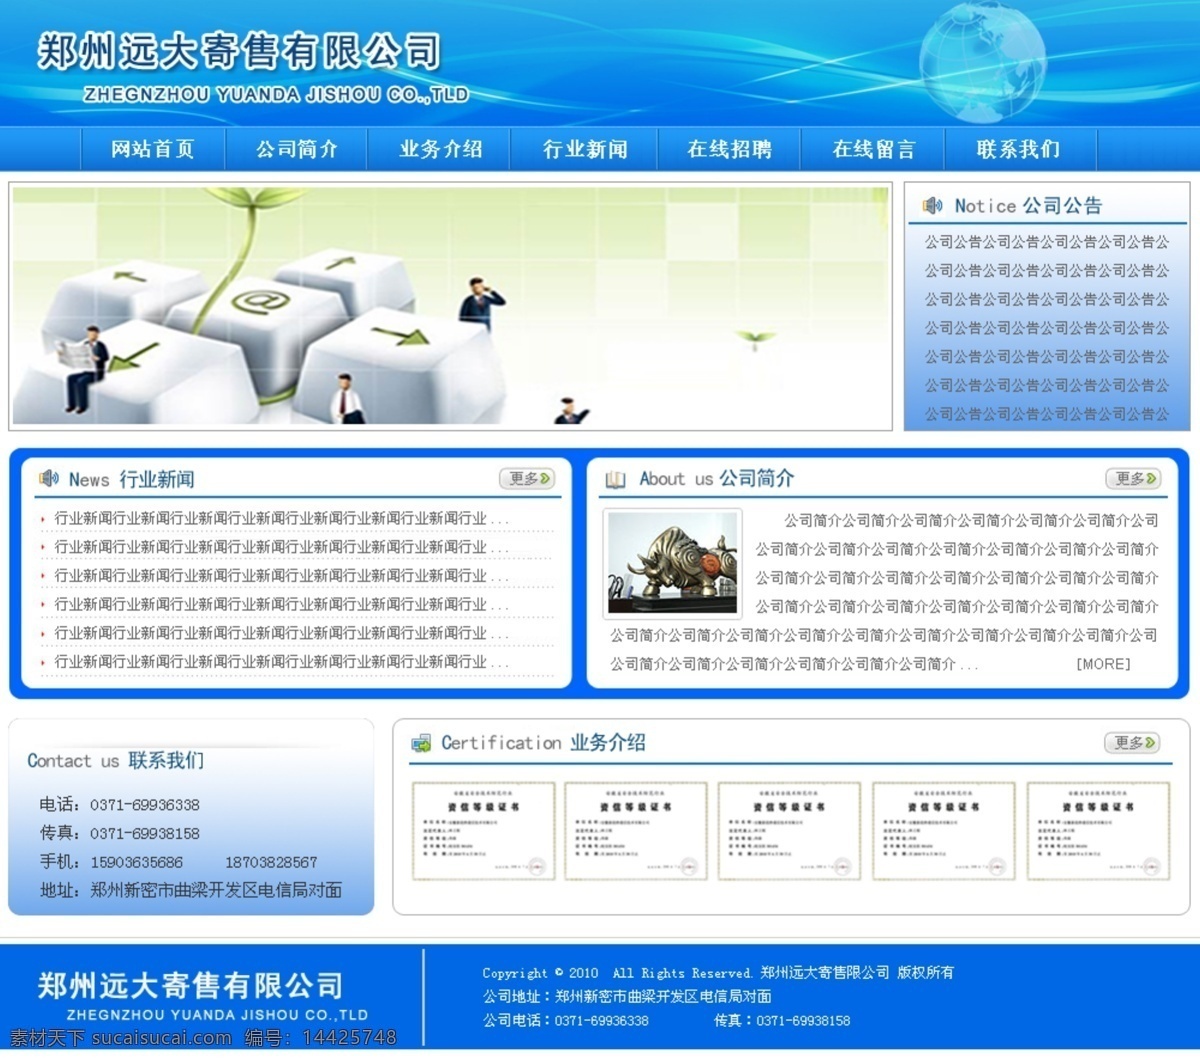 网站免费下载 蓝色 网页 网页模板 网页设计 网站 网站设计 网站首页 源文件 寄售 远大寄售 中文模版 网页素材